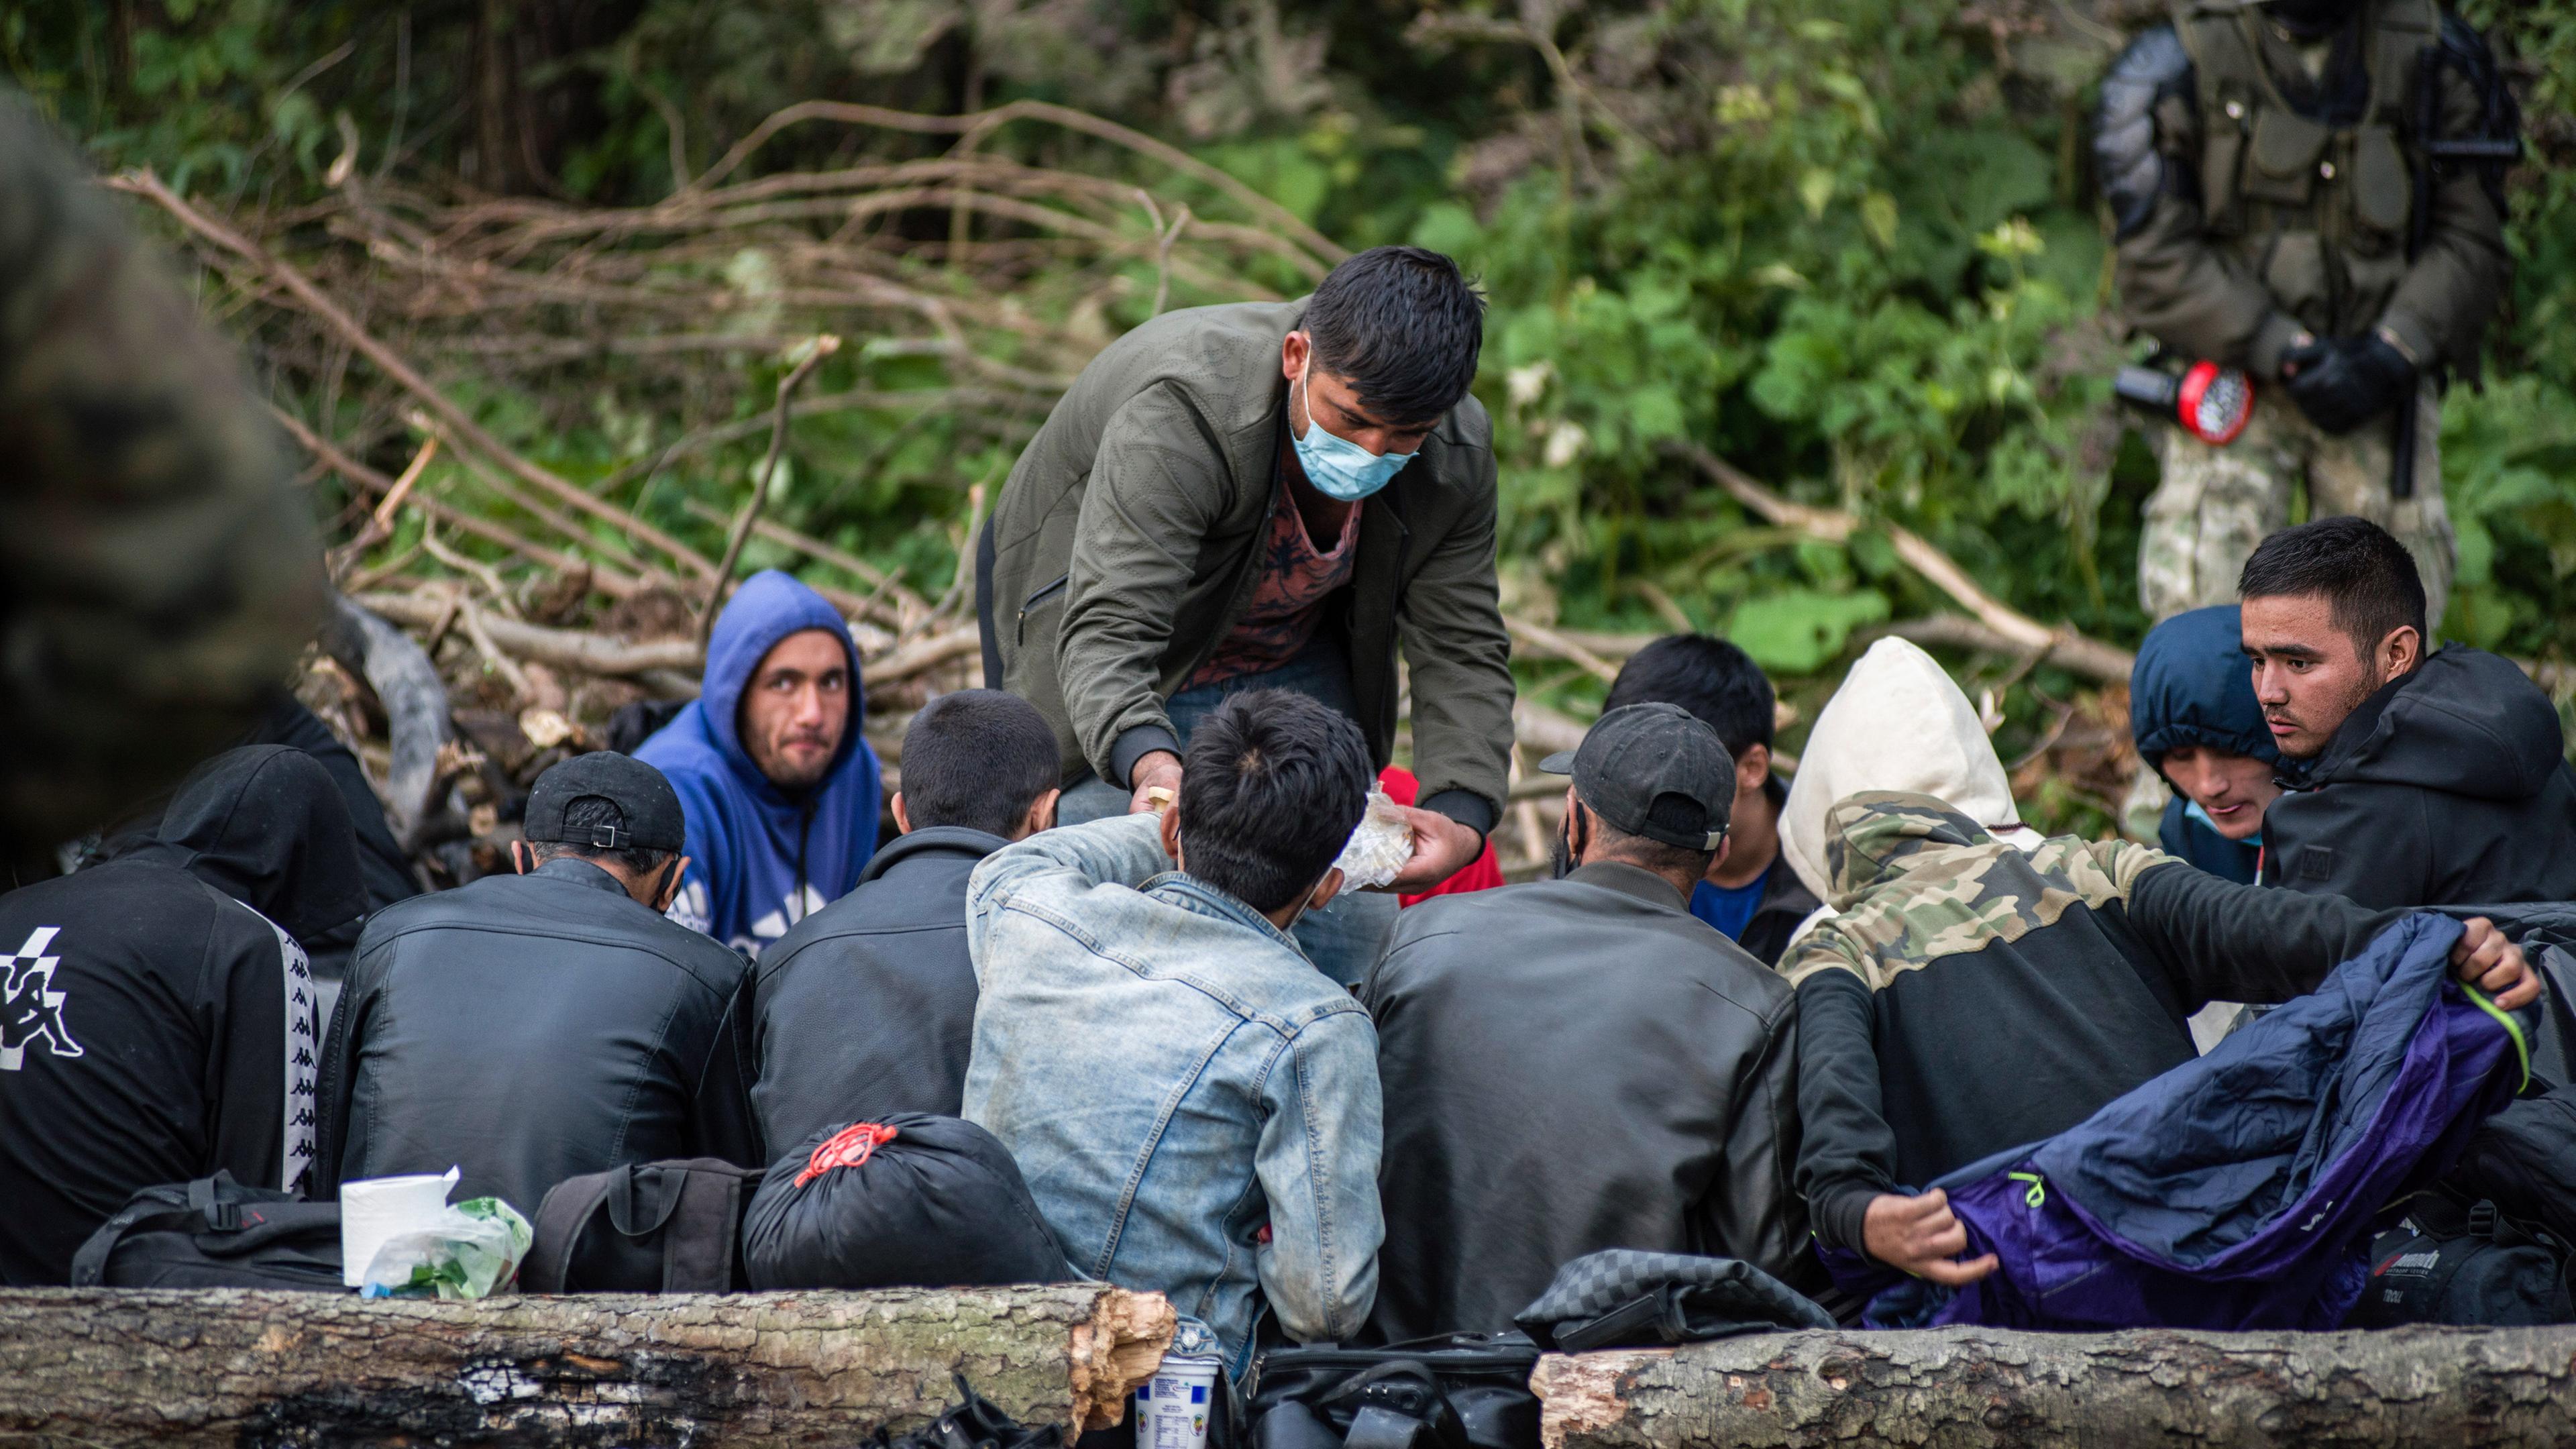 ARCHIV - 19.08.2021, Polen, Usnarz Gorny: Afghanische Flüchtlinge, die an der polnisch-belarussischen Grenze festsitzen, warten in einem behelfsmäßigen Lager. 